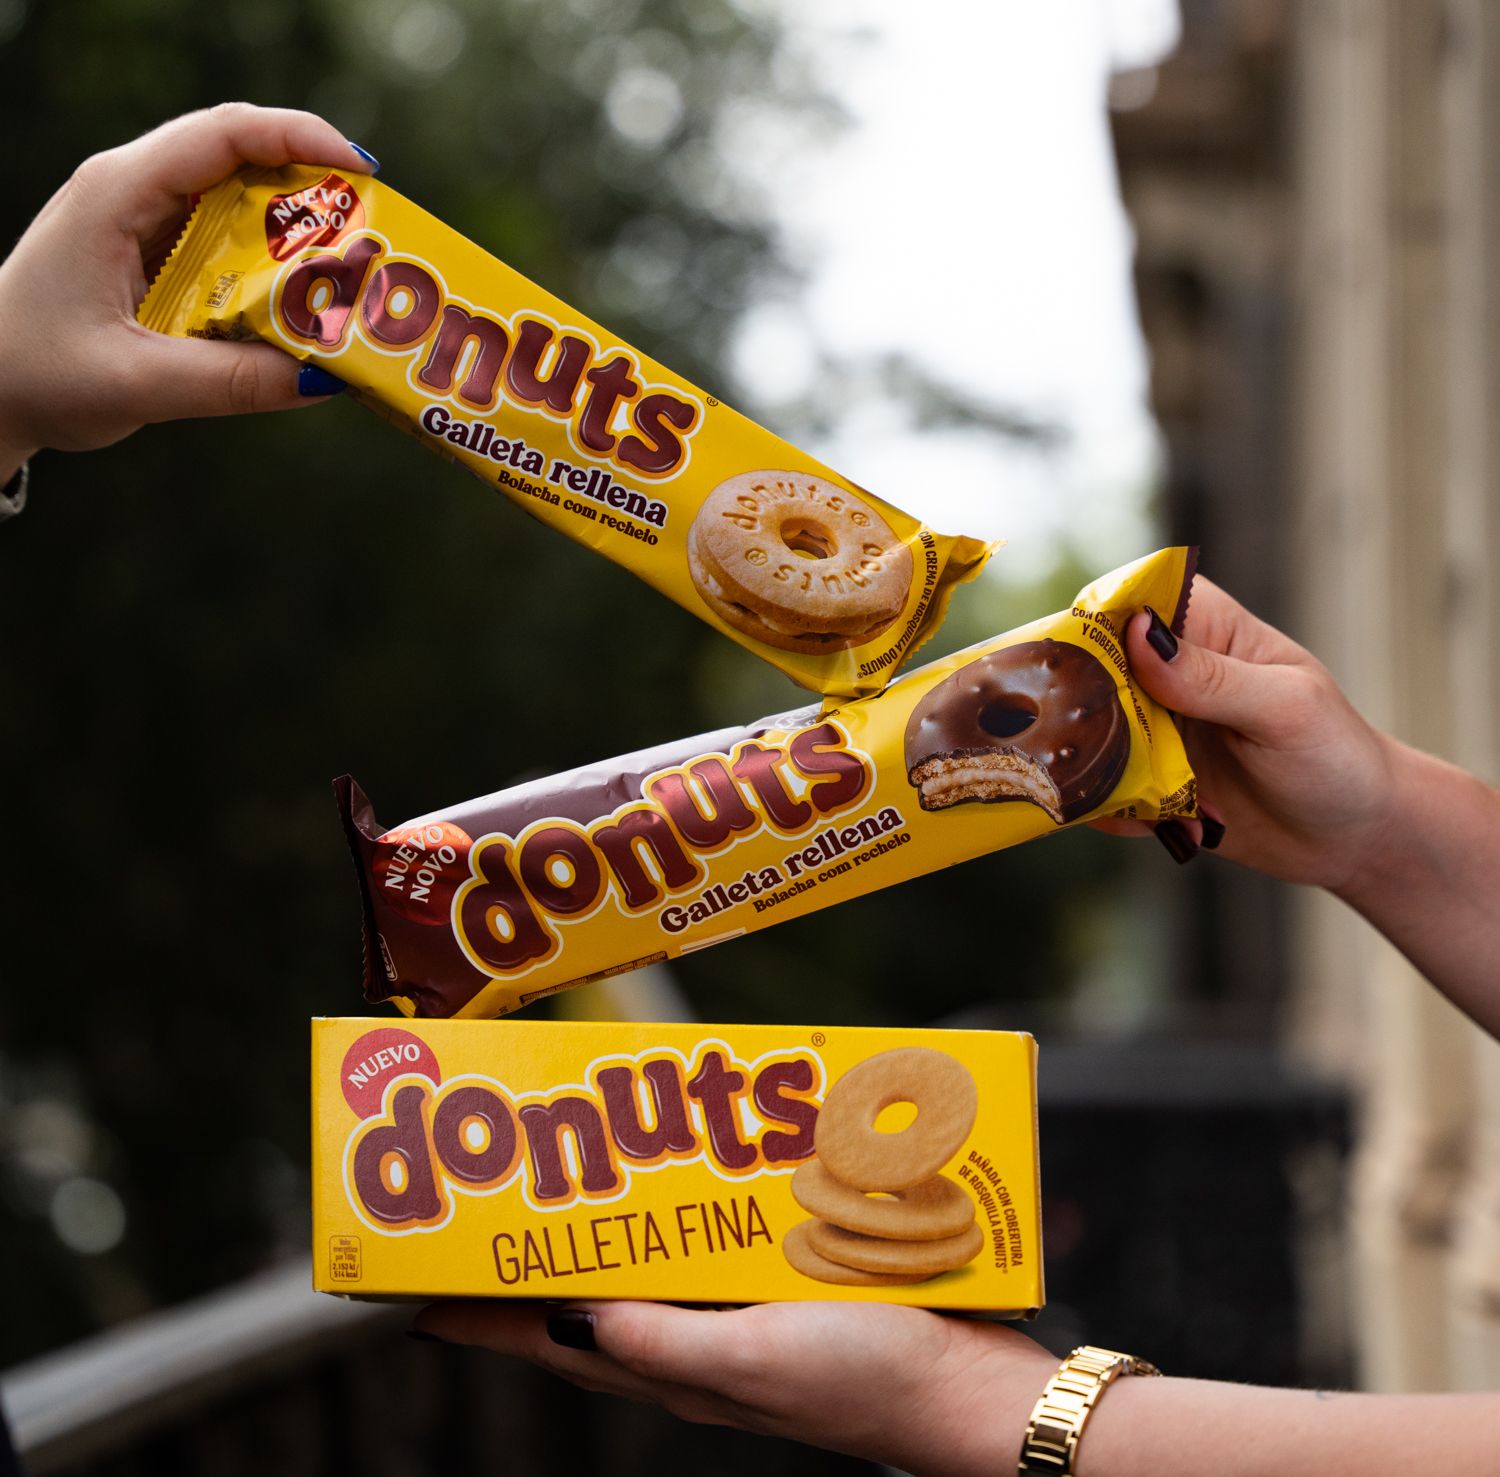 Las nuevas galletas rellenas de Donuts que triunfan en Ahorramas